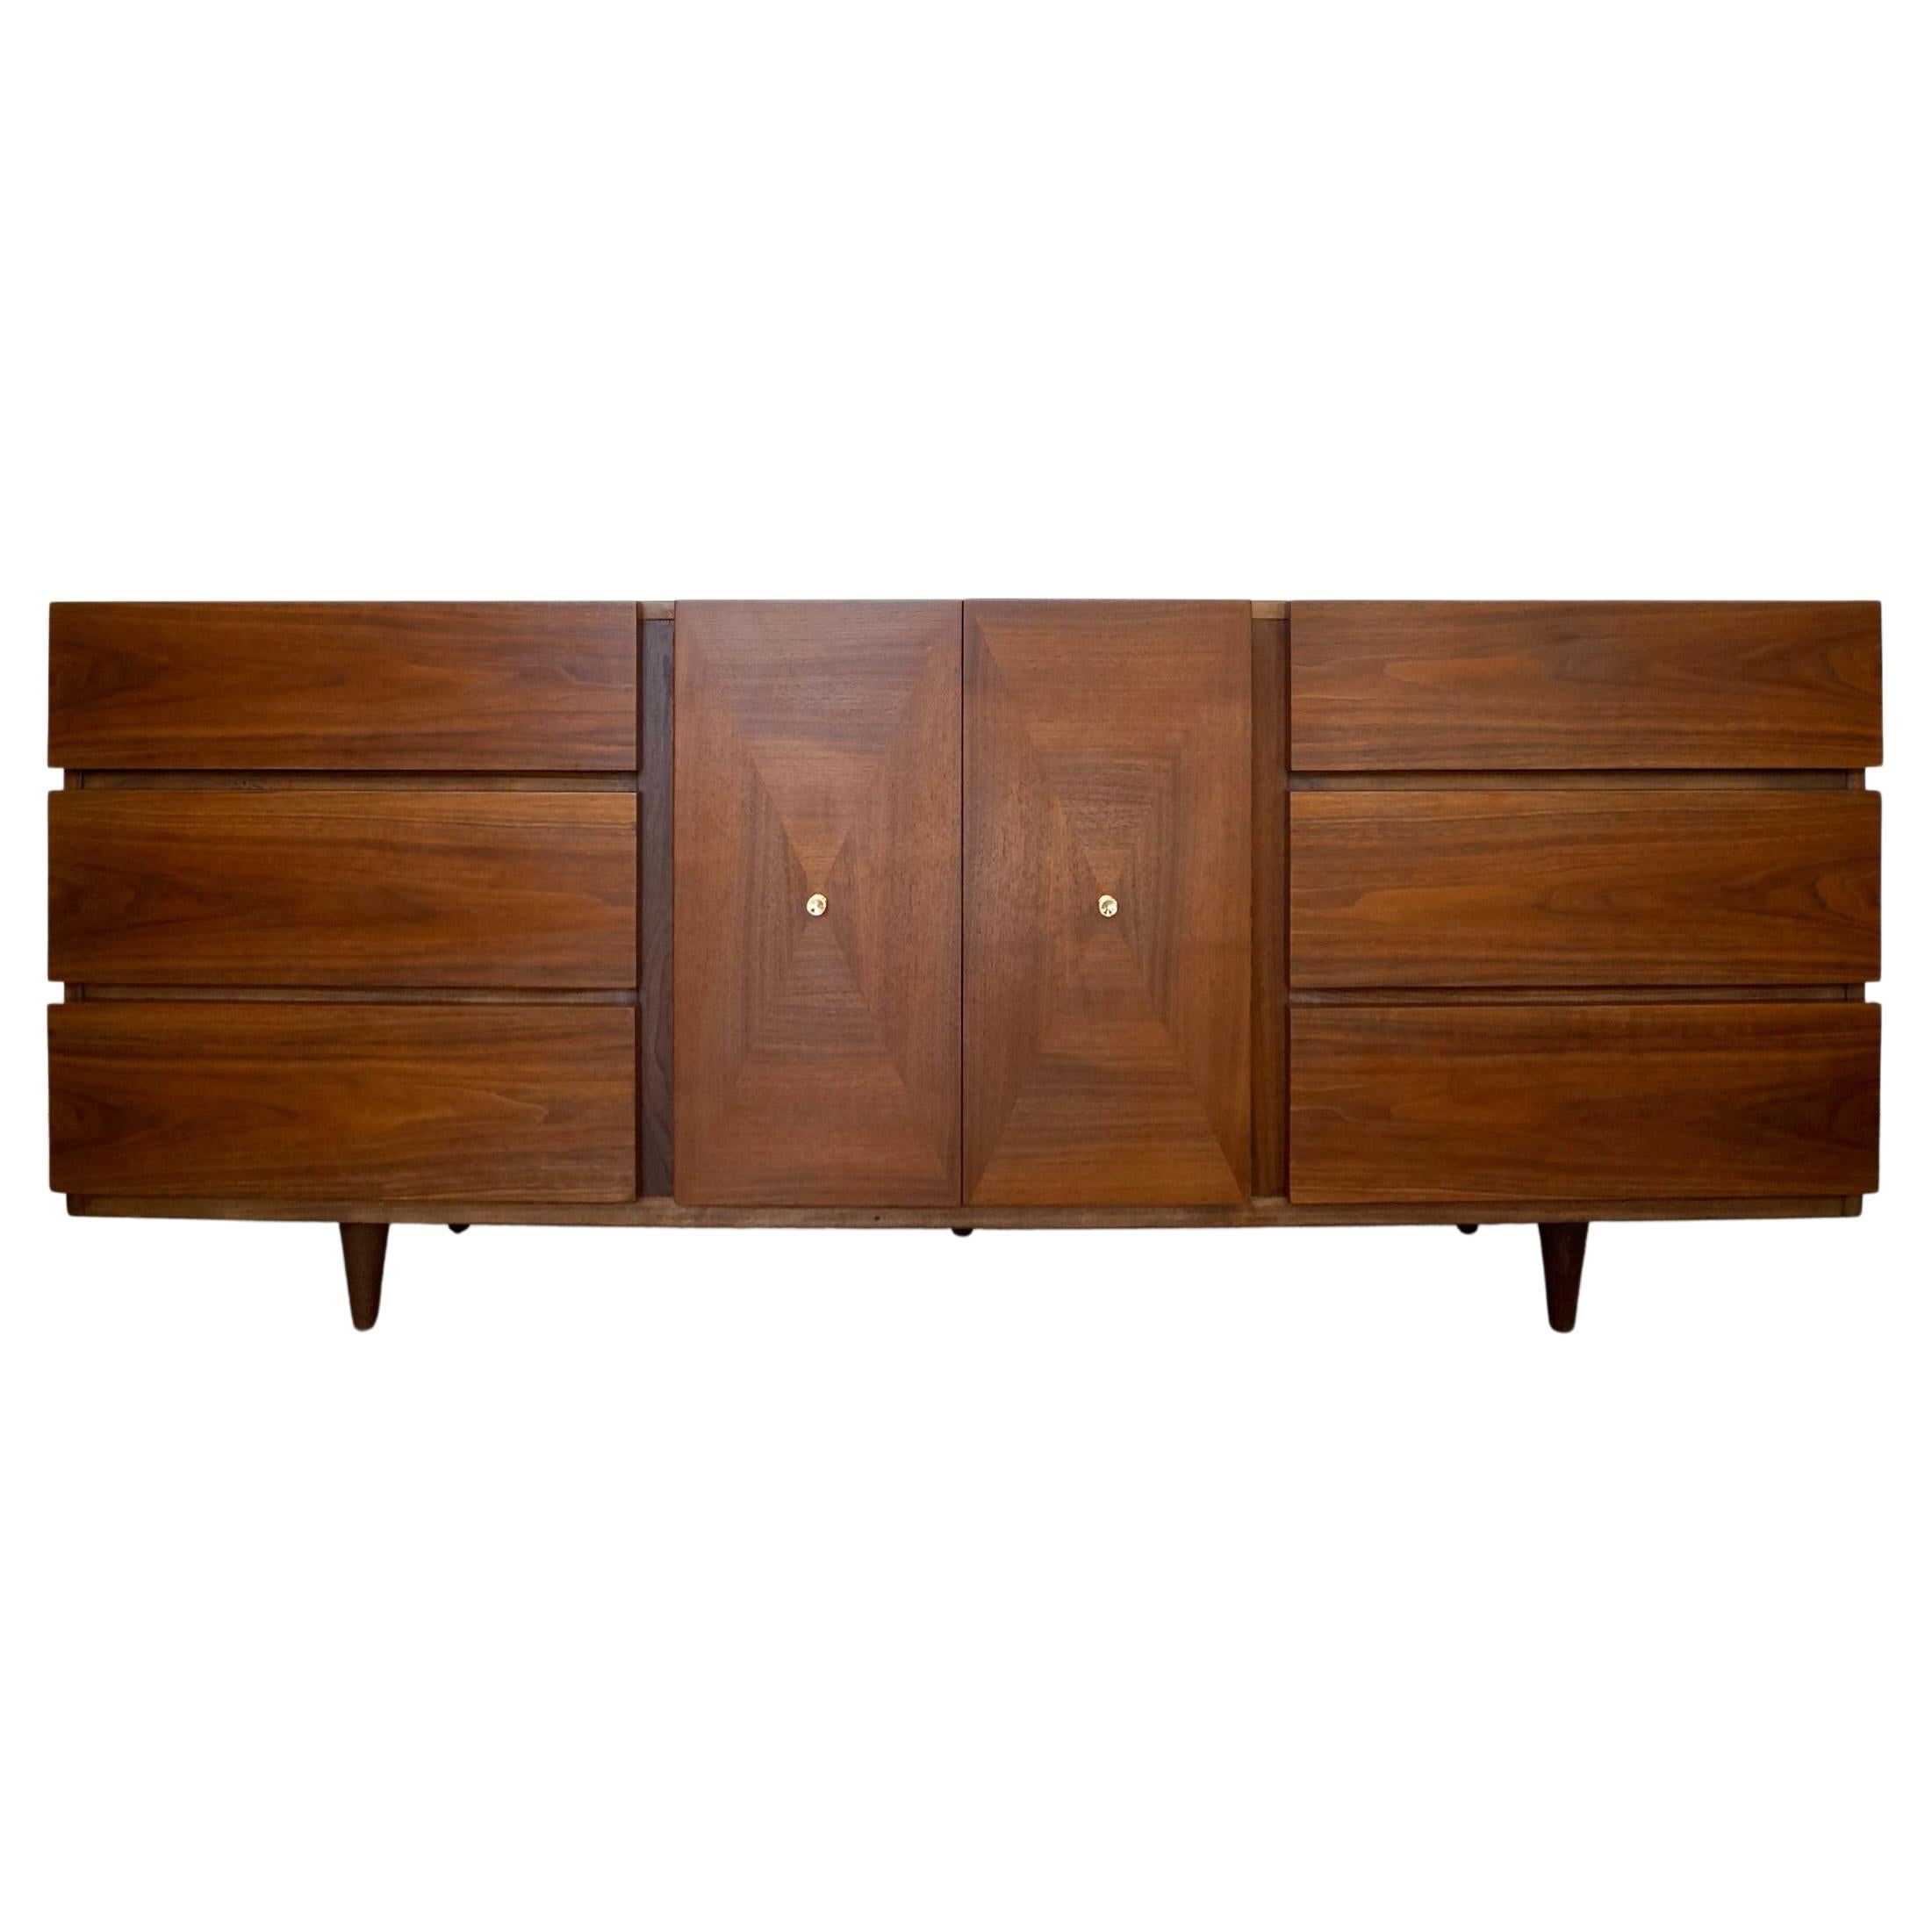 1960s Mid-Century Modern Walnut Credenza / Dresser by American of Martinsville